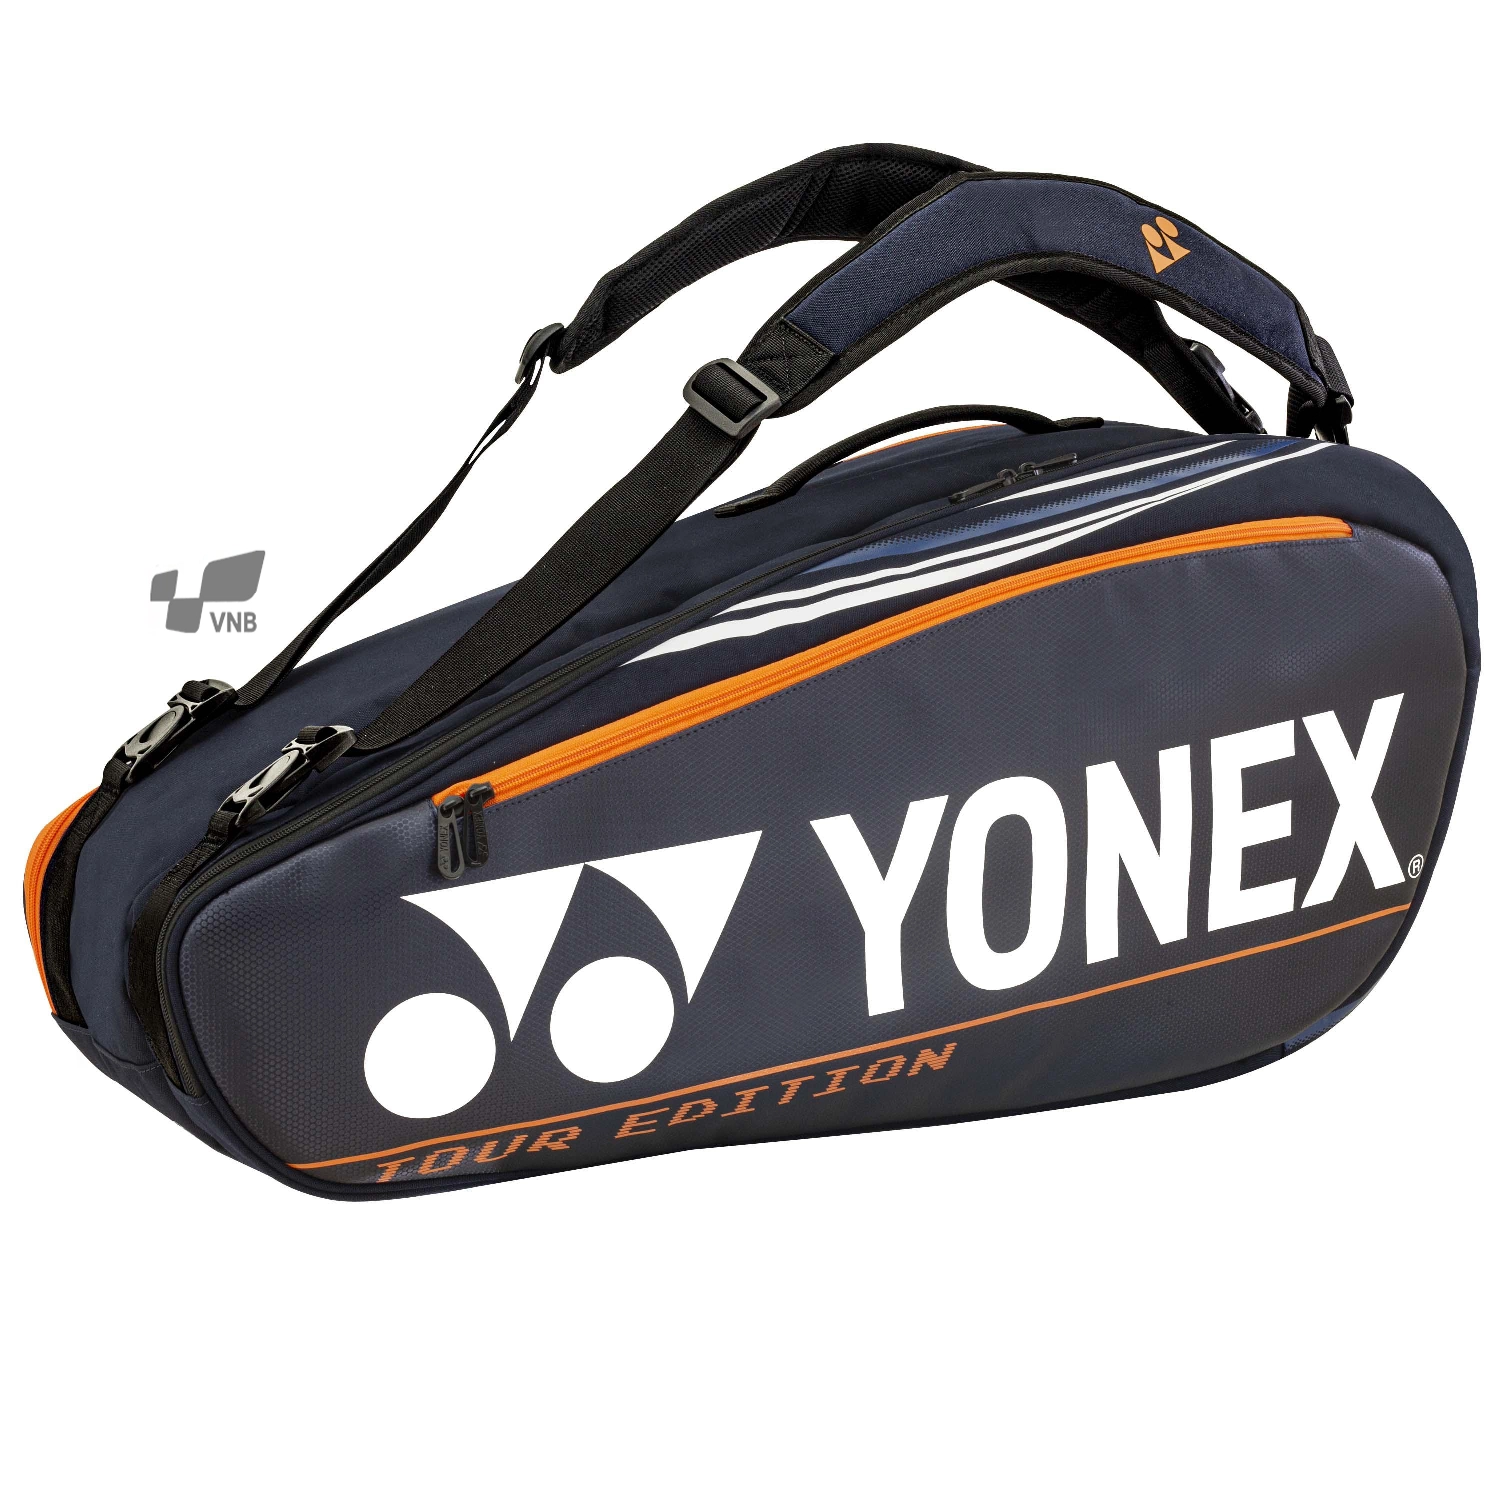 Túi cầu lông Yonex BAG92026 - Xanh đen